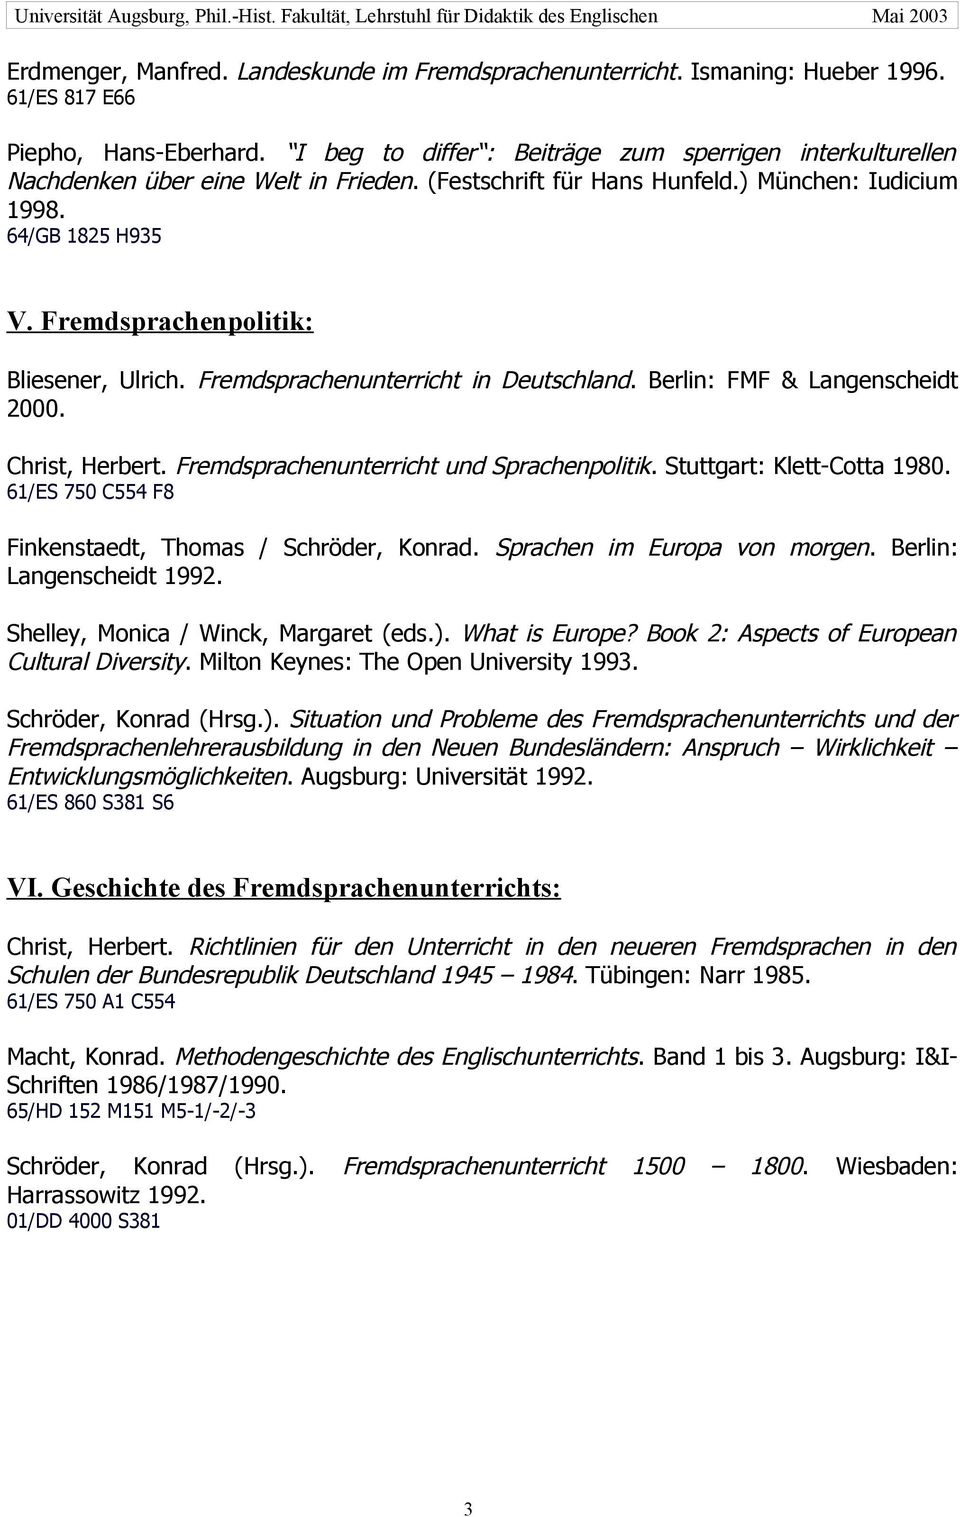 Fremdsprachenpolitik: Bliesener, Ulrich. Fremdsprachenunterricht in Deutschland. Berlin: FMF & Langenscheidt 2000. Christ, Herbert. Fremdsprachenunterricht und Sprachenpolitik.